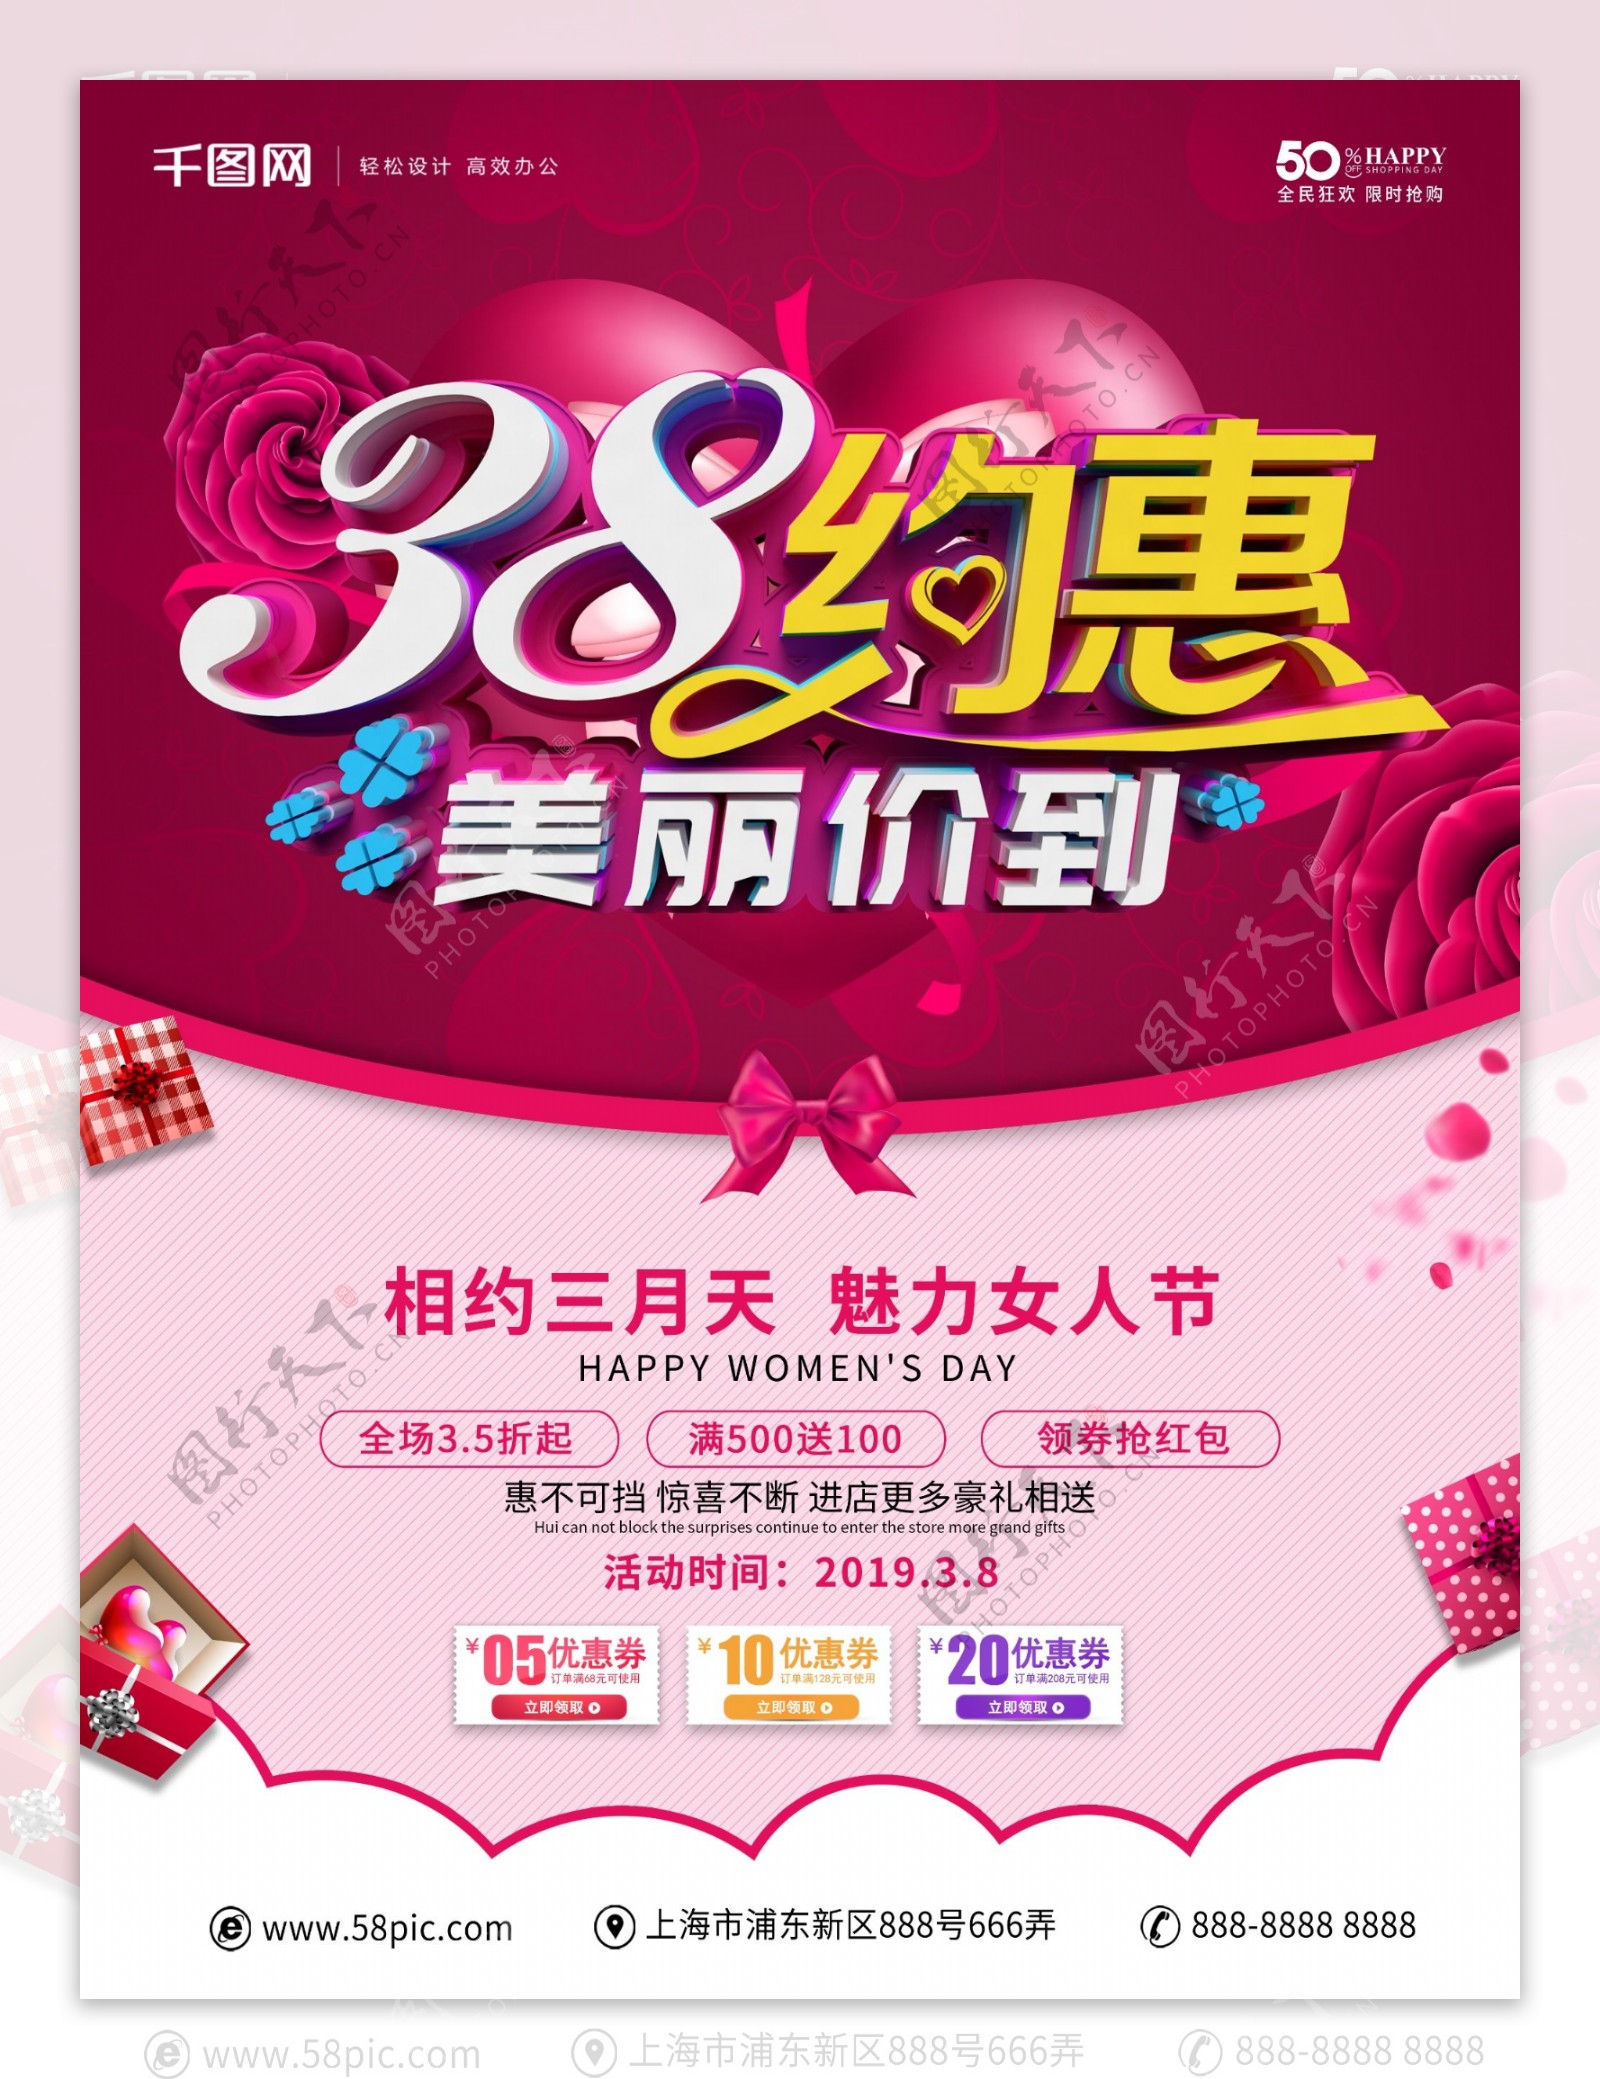 粉红色温馨38妇女节促销海报